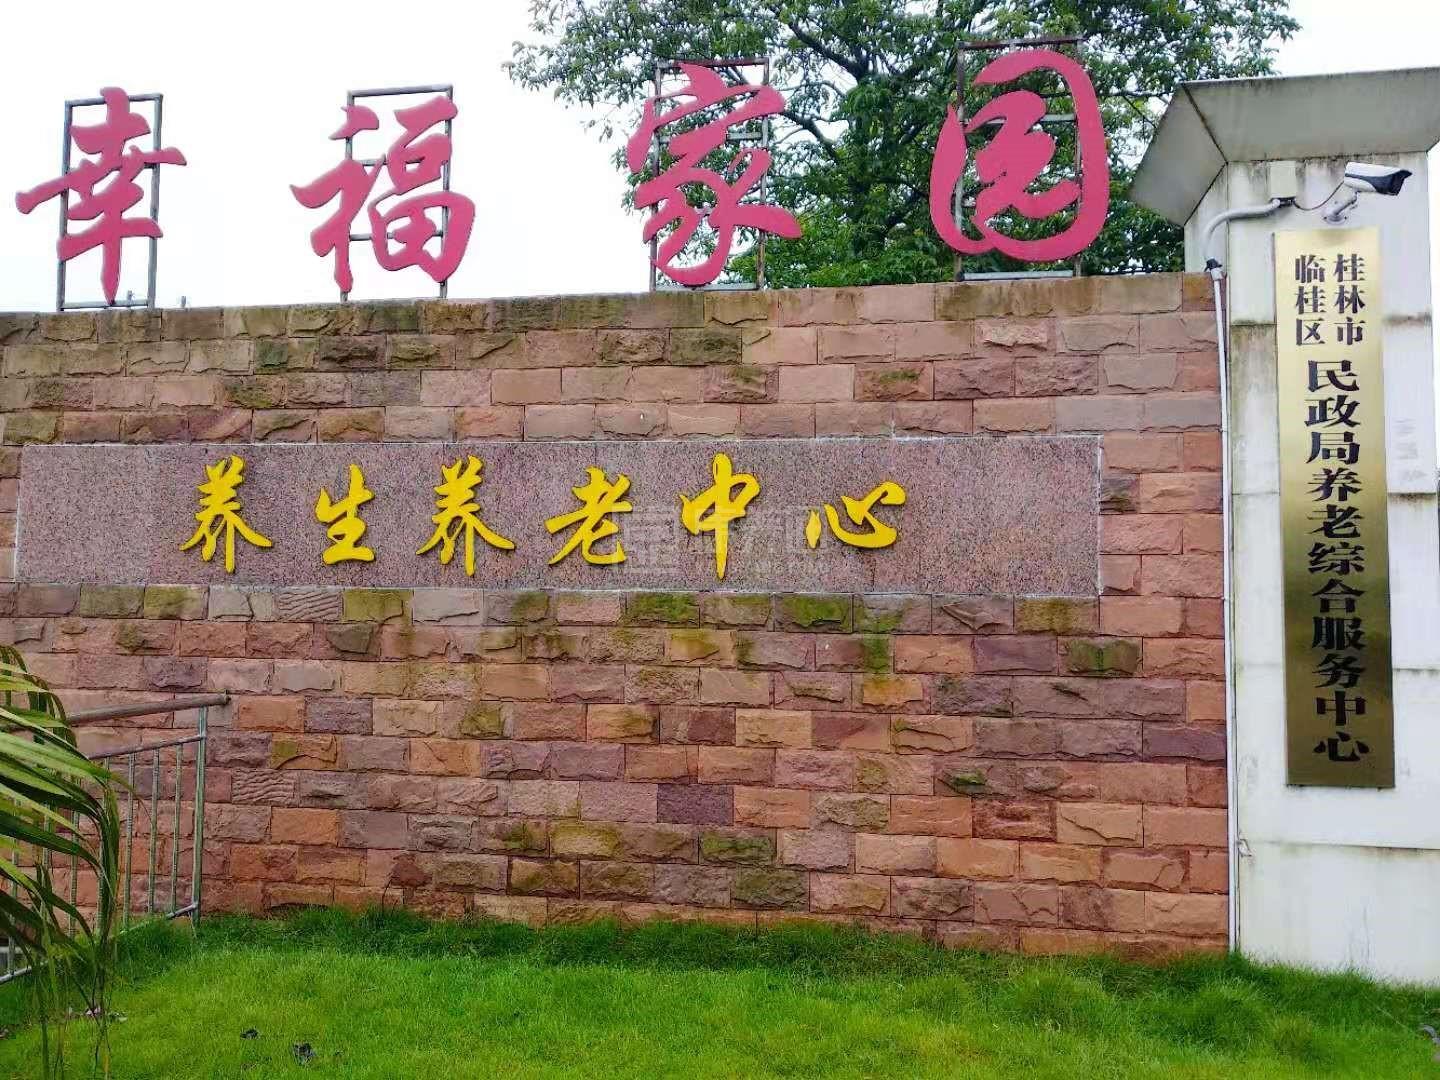 桂林市临桂区幸福家园养生养老中心环境图-餐台